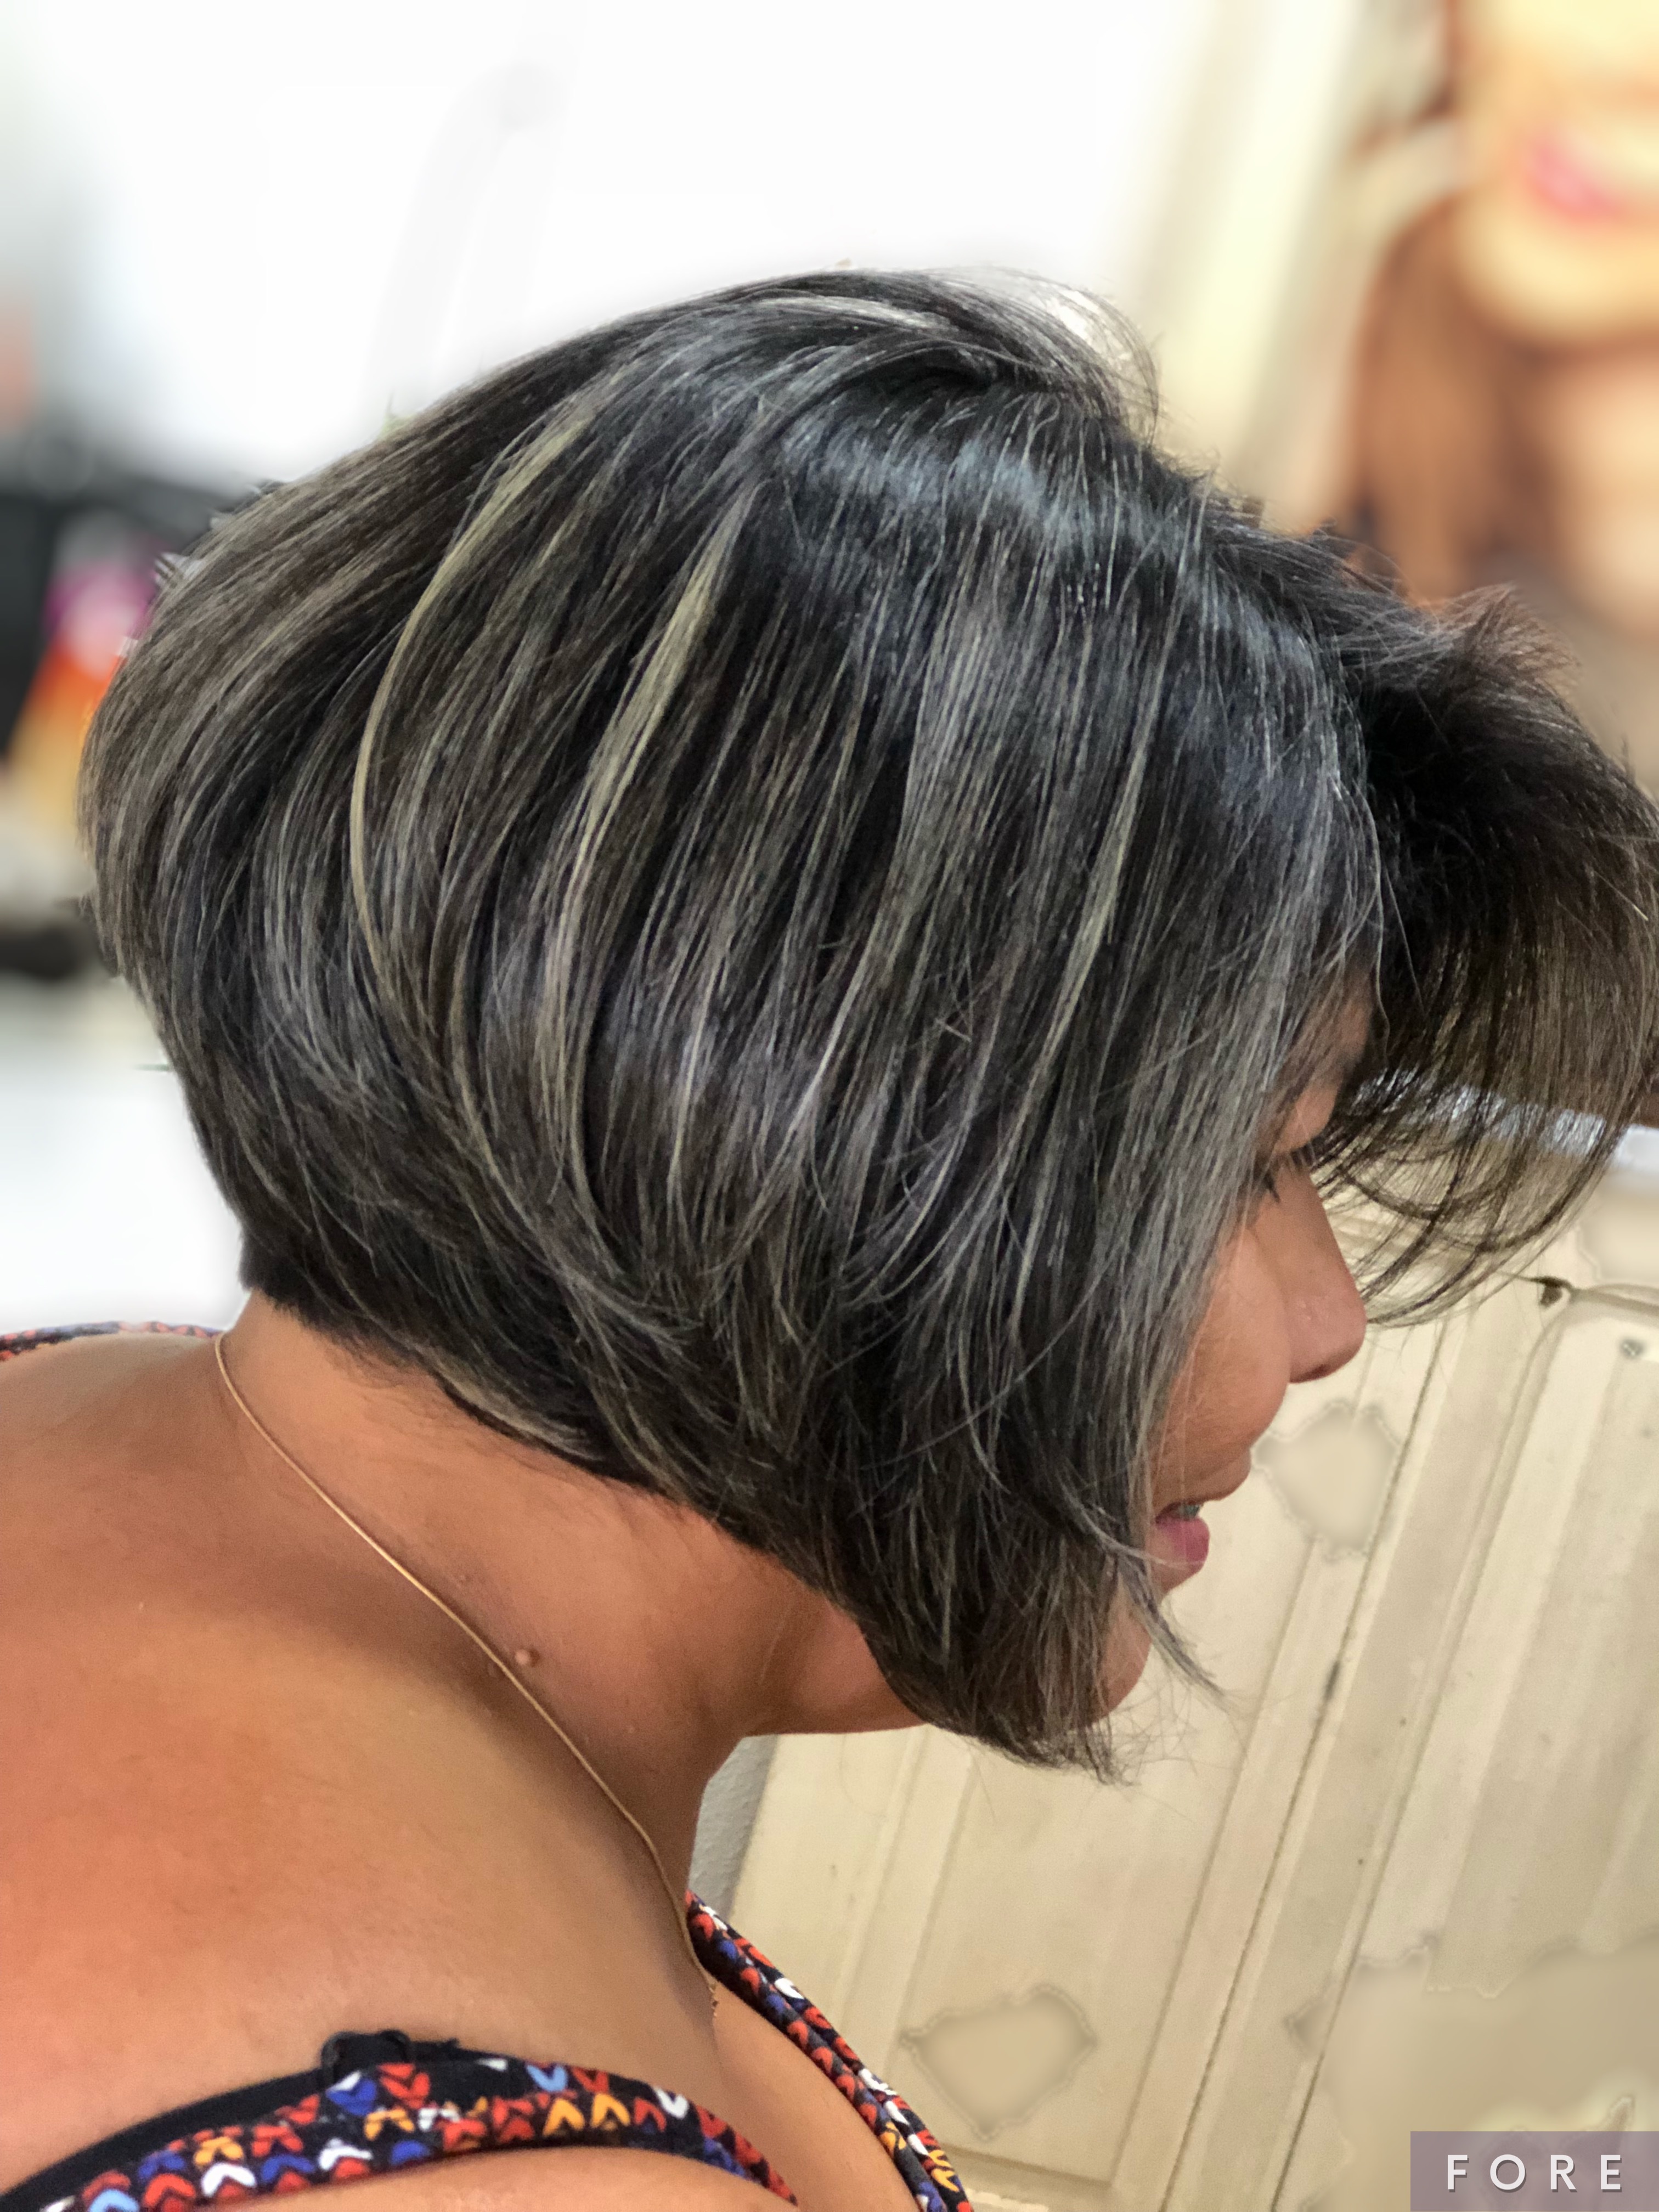 Arte de esculpir e trazer harmonia com a identidade 💗 cabelo cabeleireiro(a)